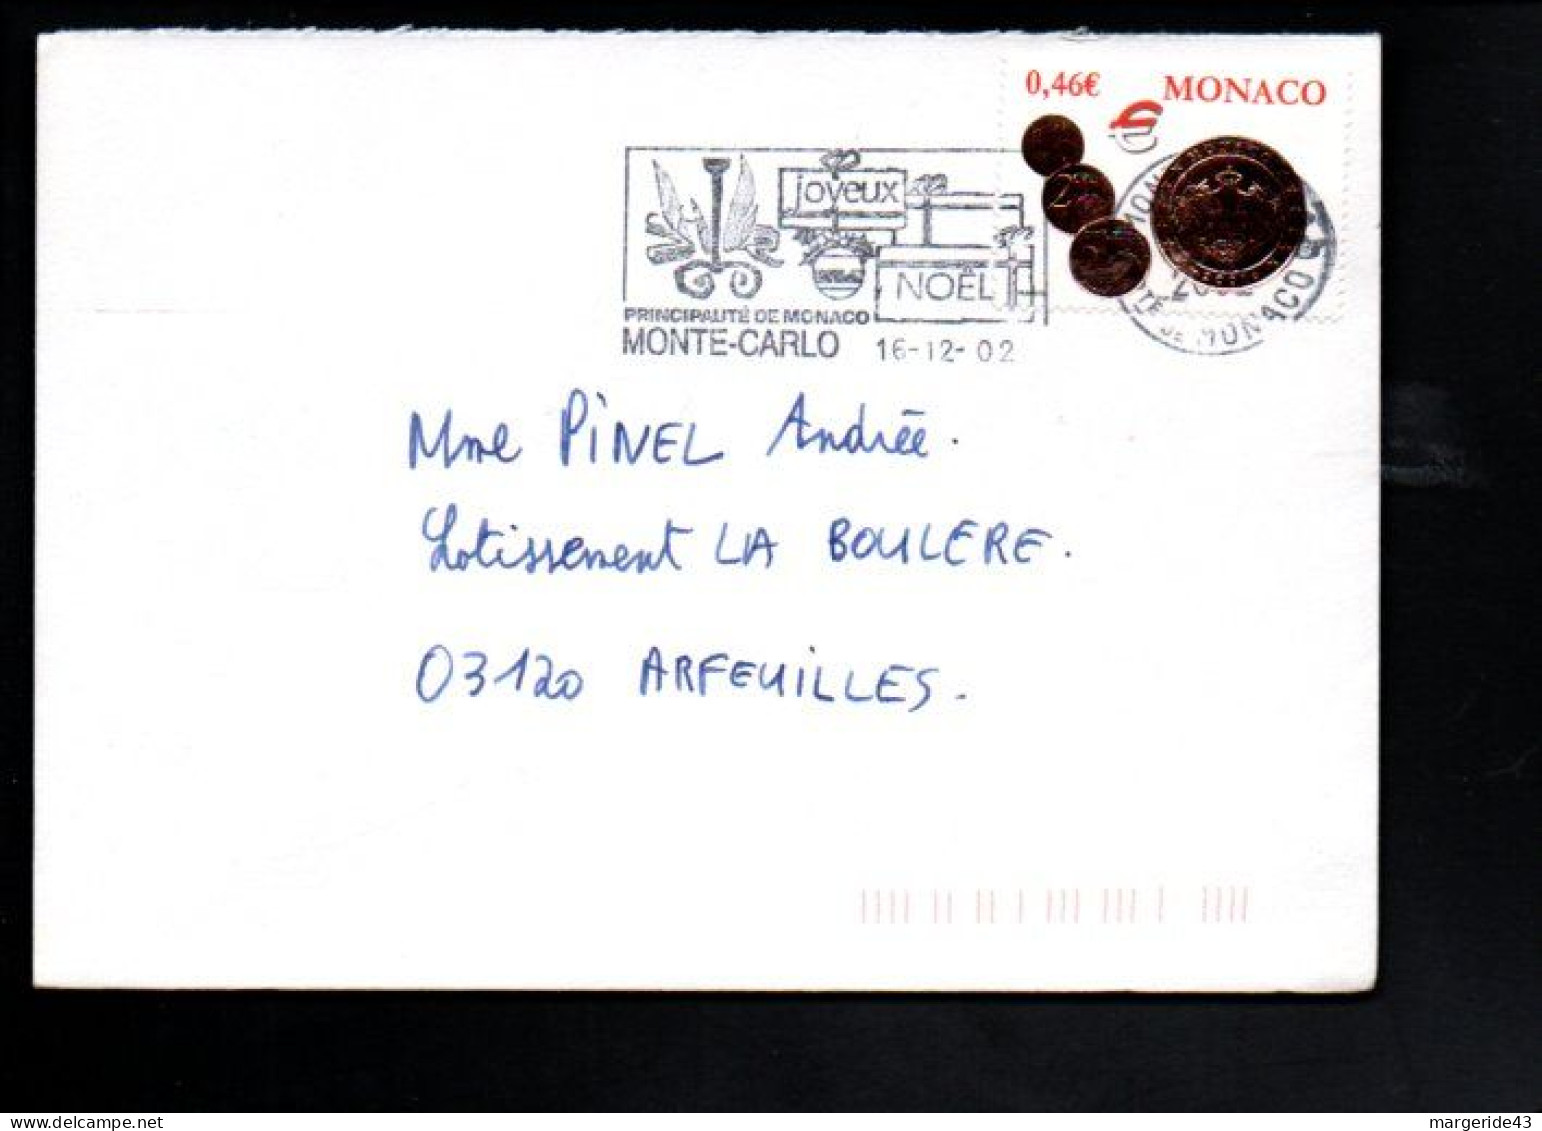 MONACO SEUL SUR LETTRE POUR LA FRANCE 2002 - Covers & Documents